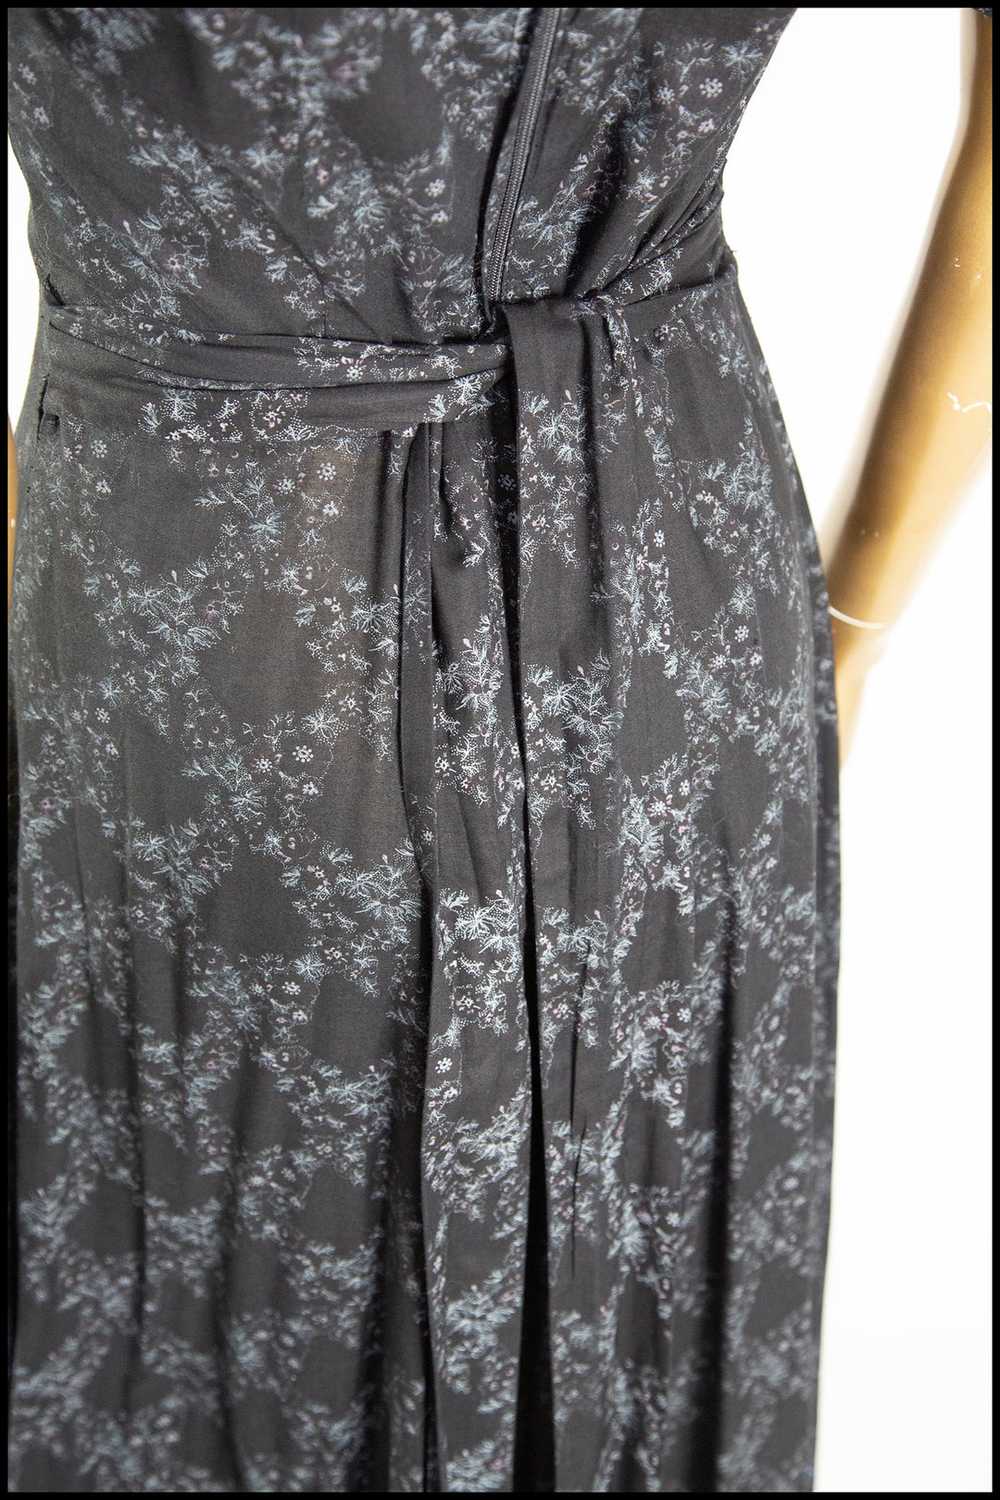 Vintage 1970s Black Floral Cotton Maxi Dress - image 5